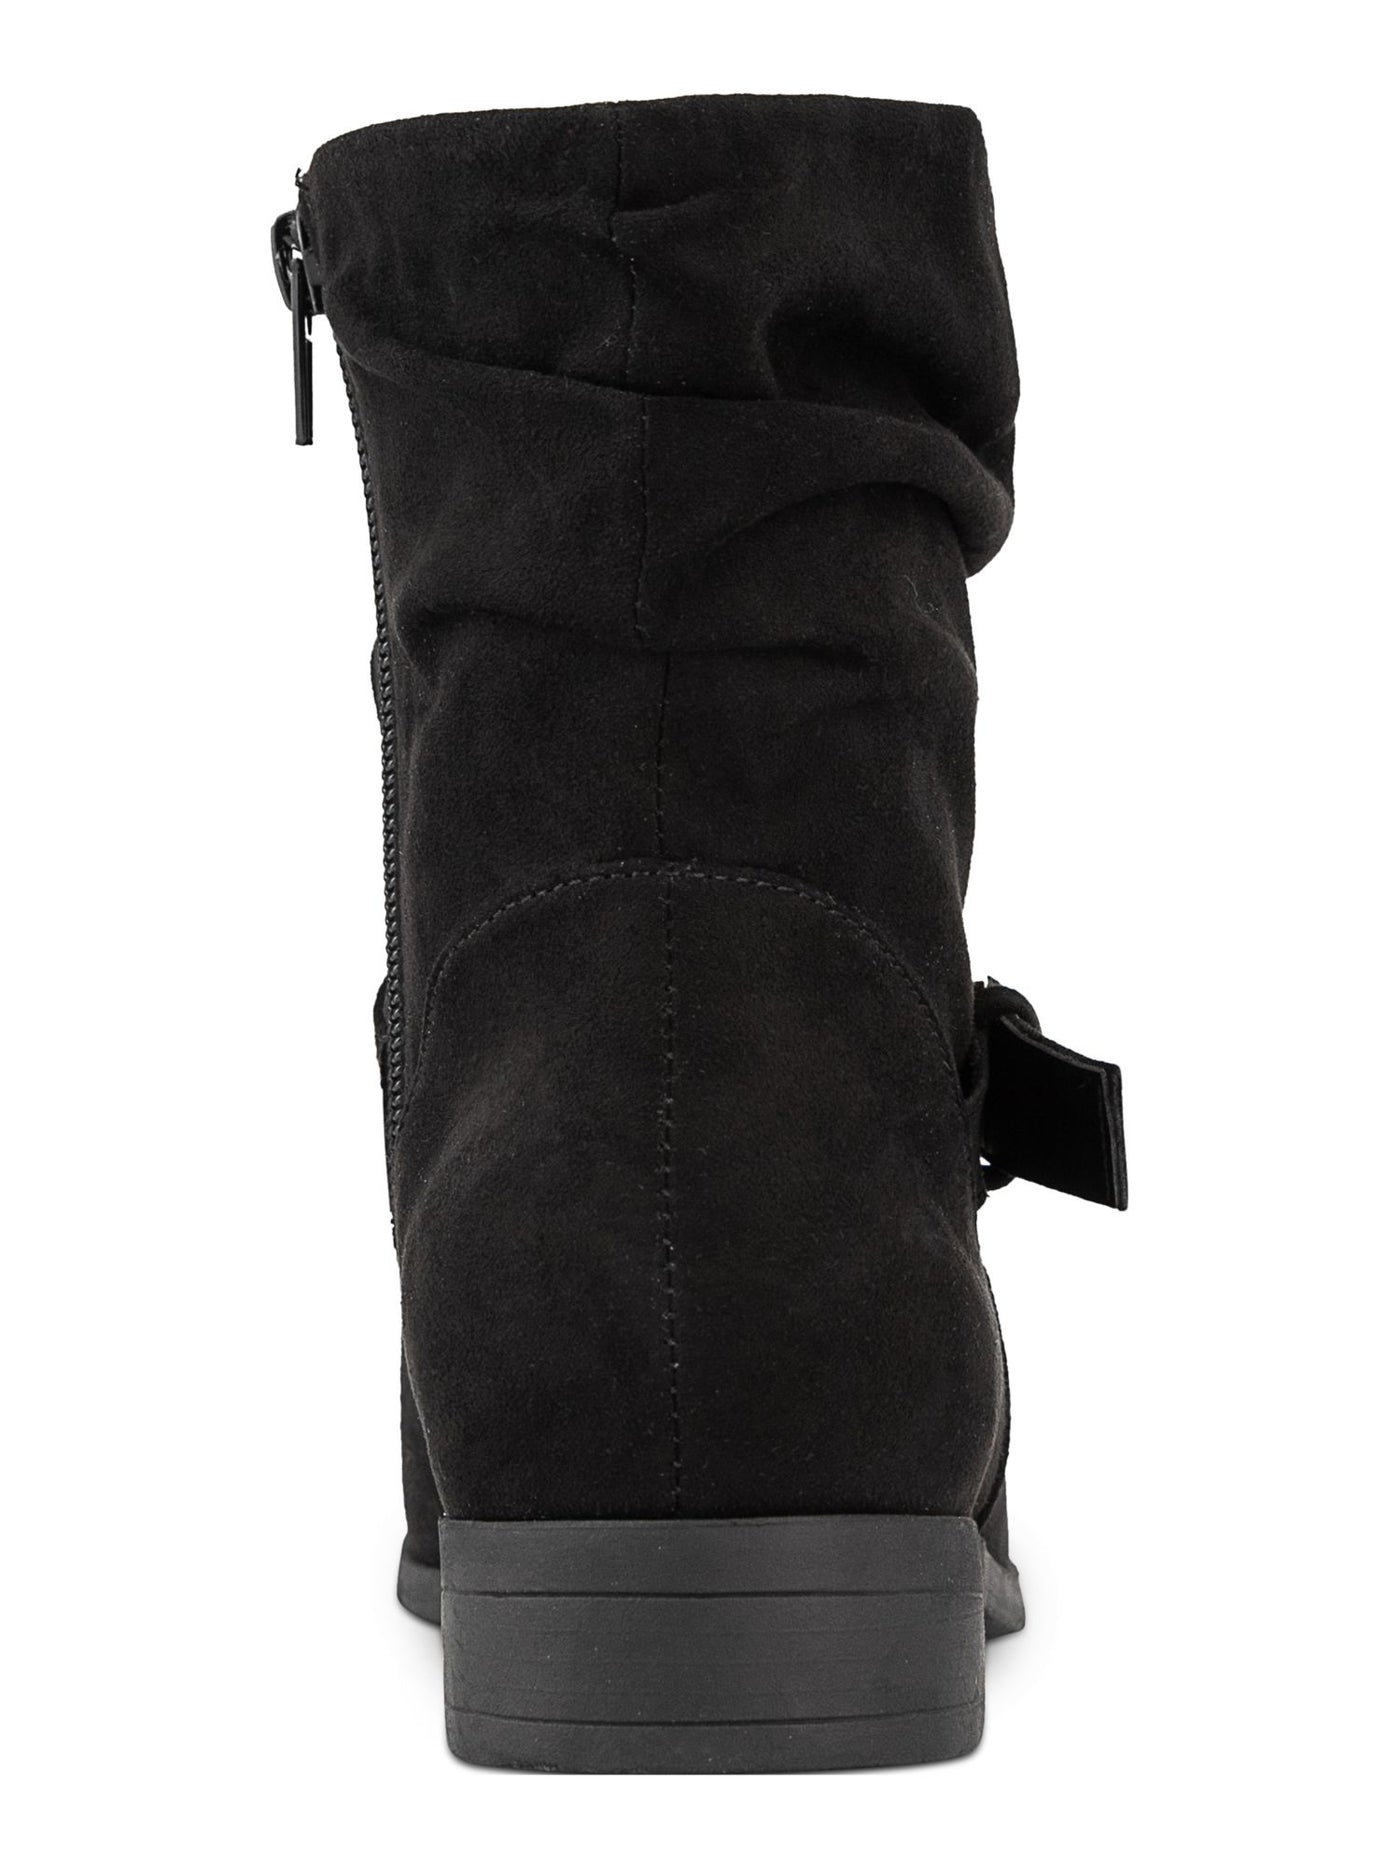 KAREN SCOTT Womens Black Buckle Accent Comfort Clarett Round Toe Block Heel Zip-Up Slouch Boot 10 M